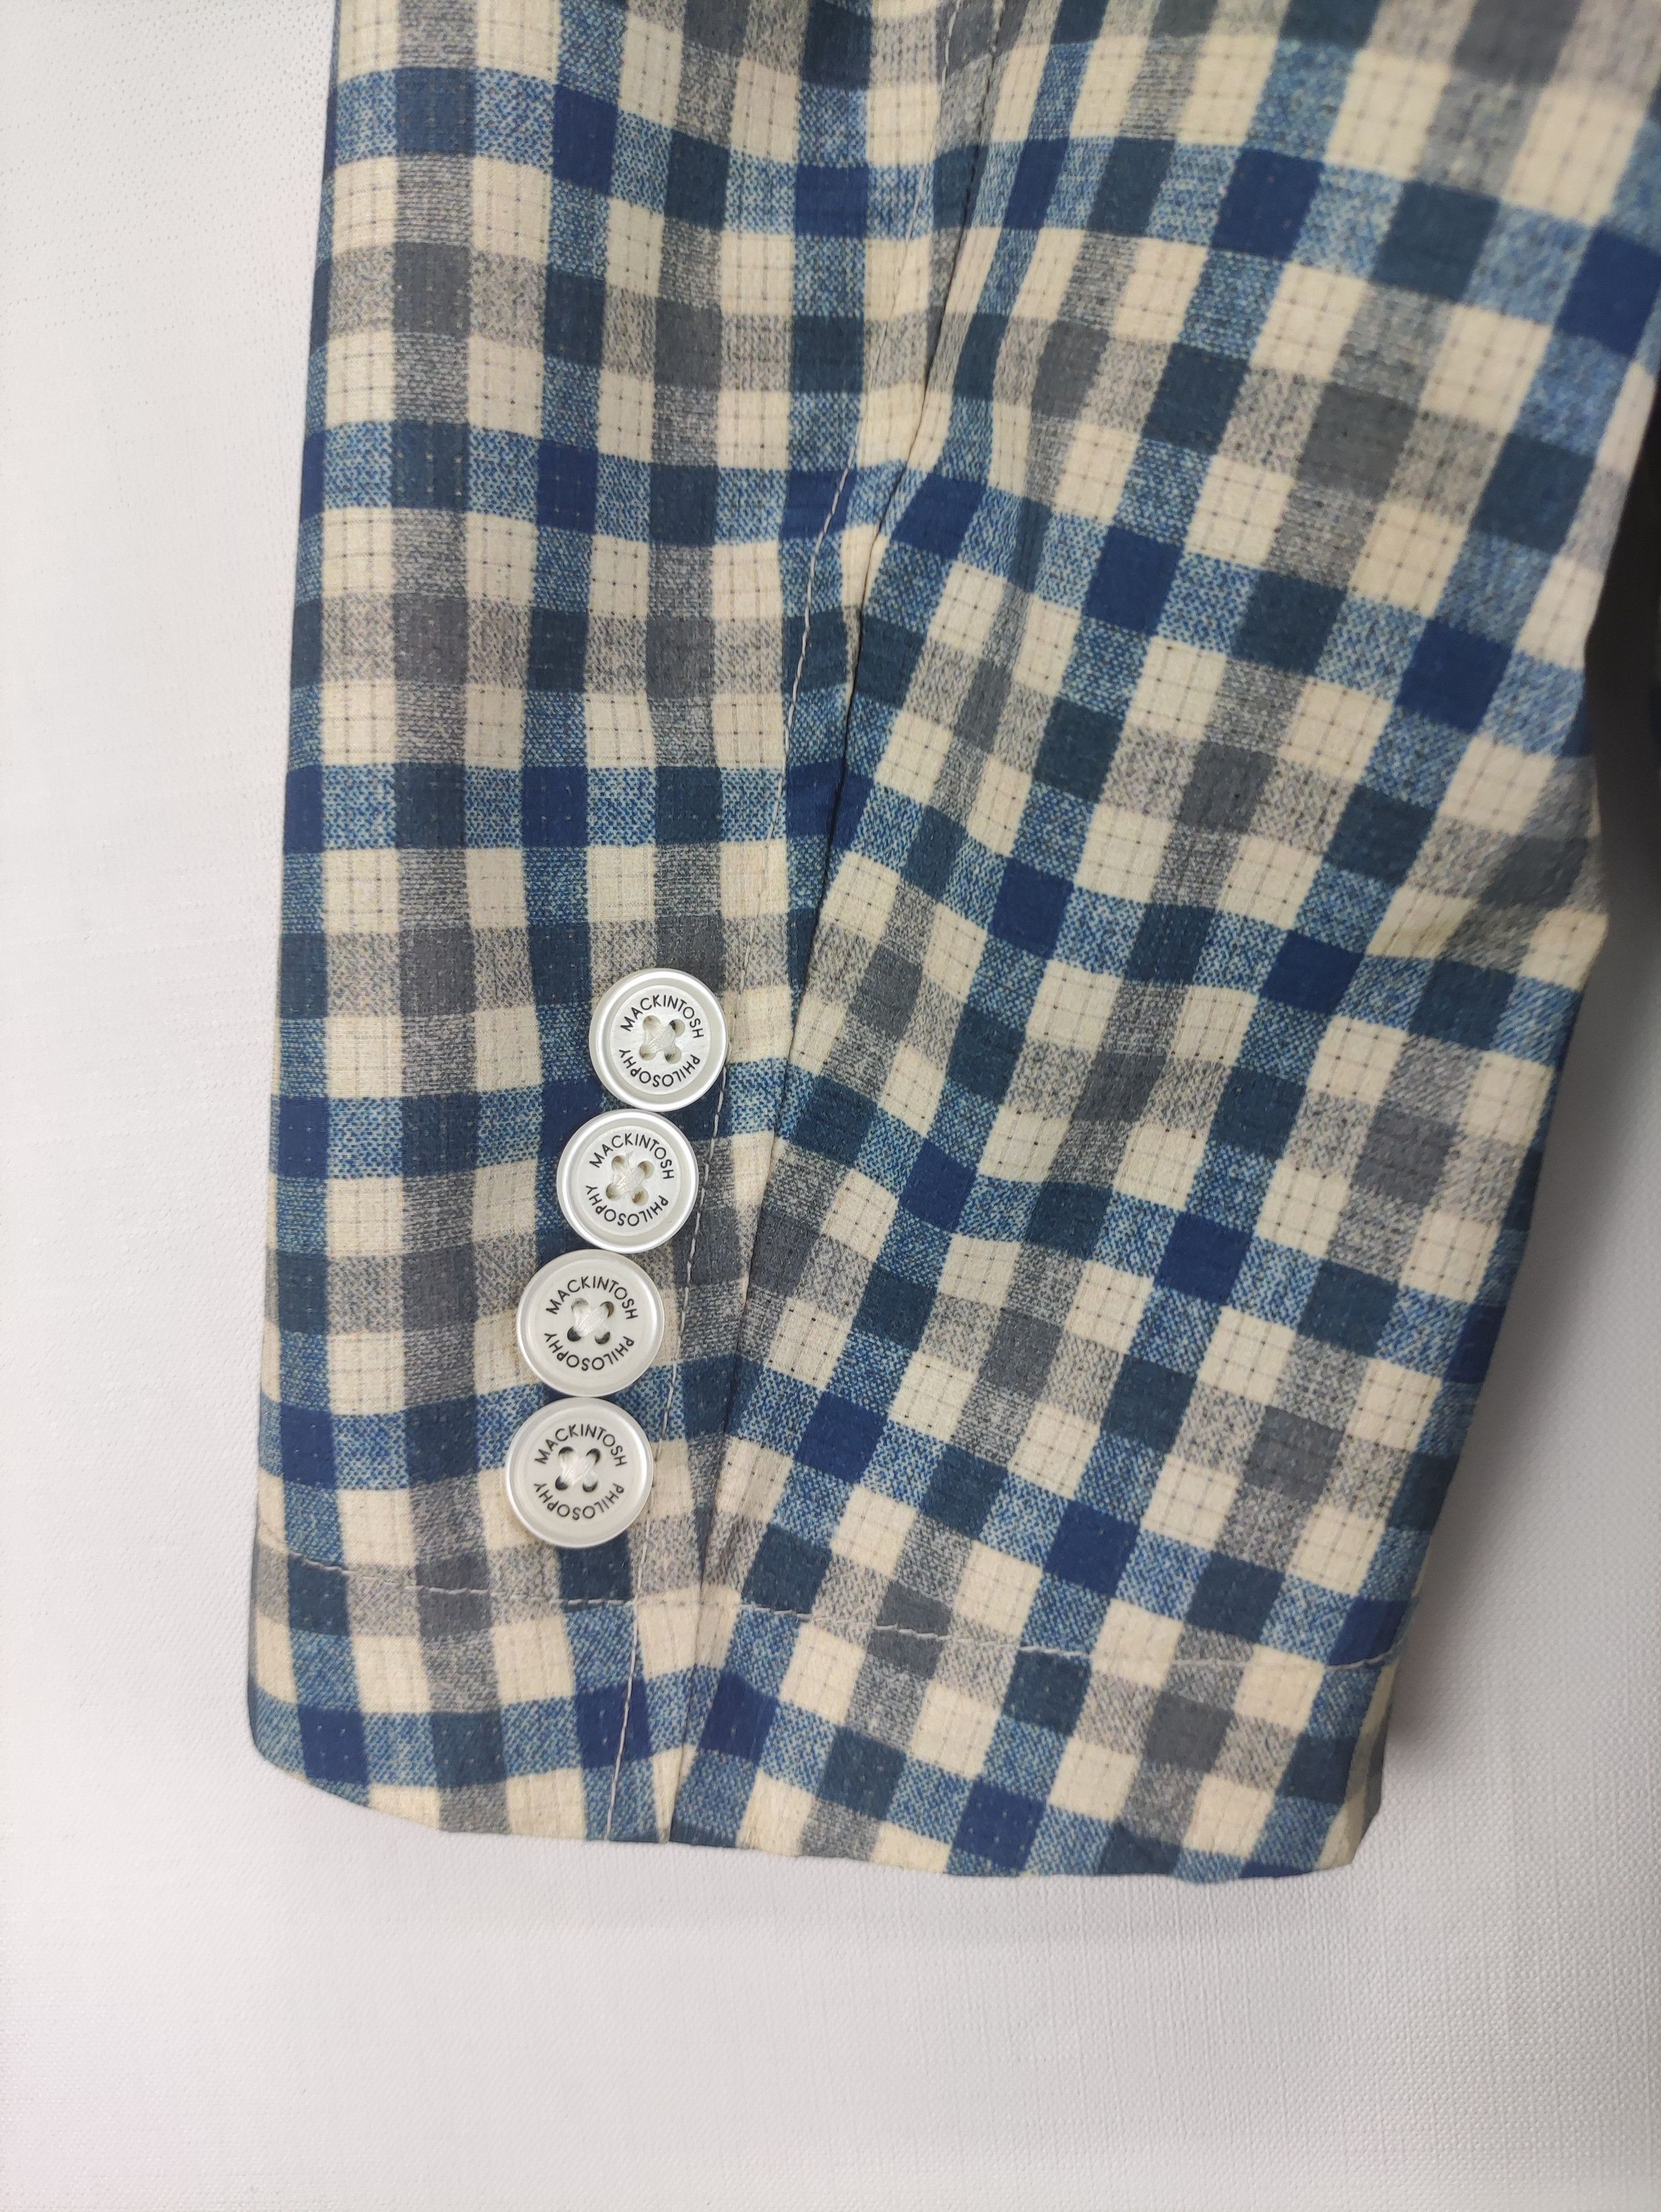 Mackintosh Vintage Mackintosh Philosophy Coat Jacket Checkered Size US S / EU 44-46 / 1 - 8 Thumbnail